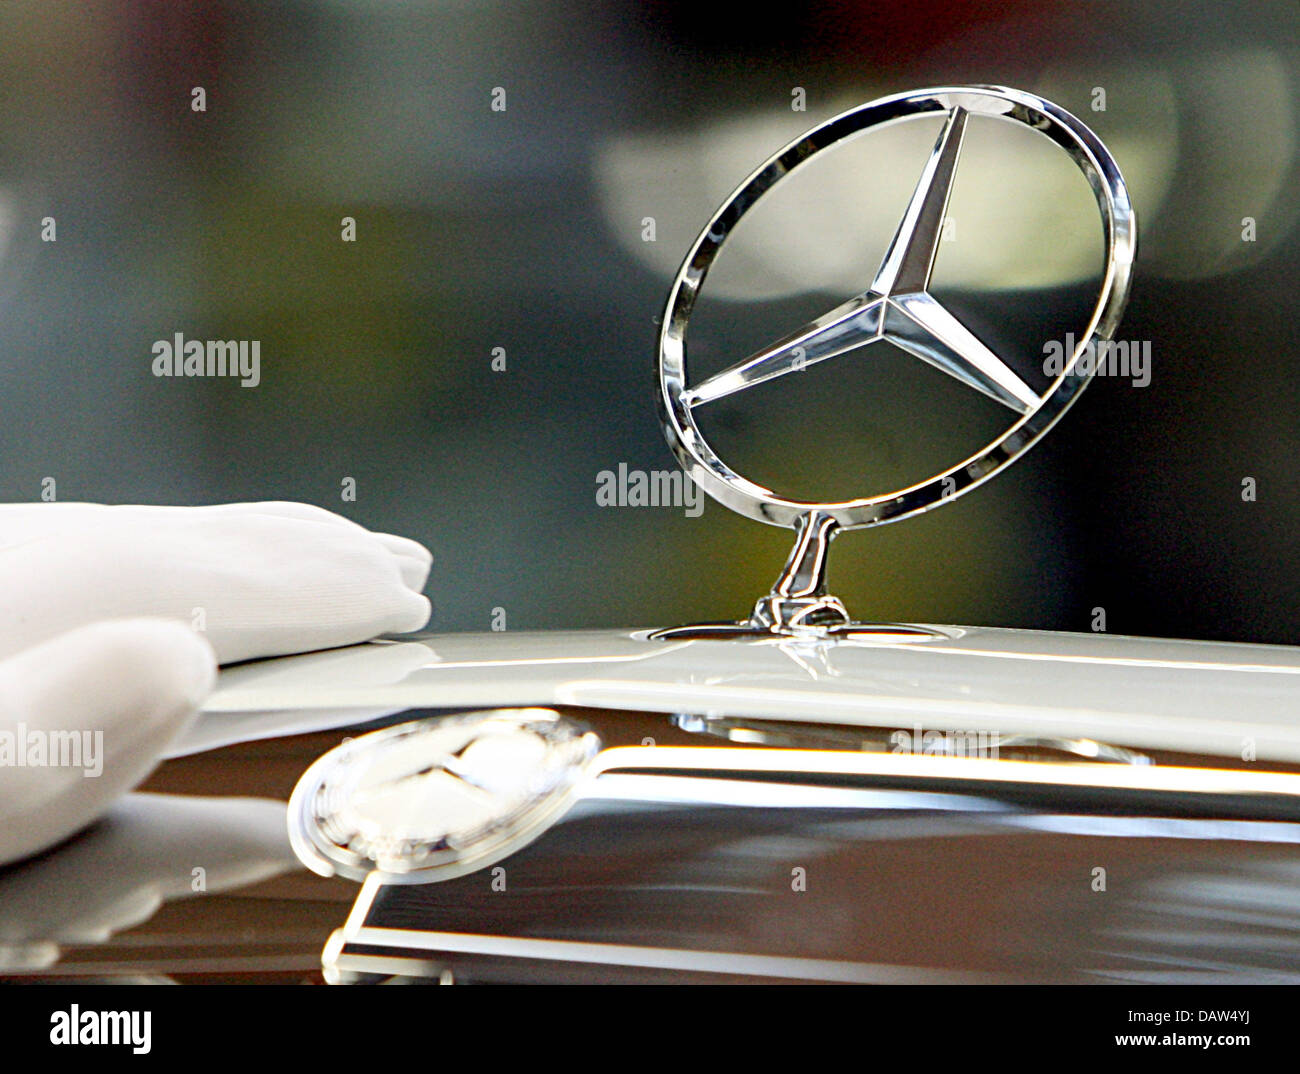 Un dipendente di costruttore DaimlerChrysler AG indossando i guanti di  cotone bianco fissa la famosa stella a tre punte con un anello normale Mercedes  Benz logo sul cofano motore di una Mercedes